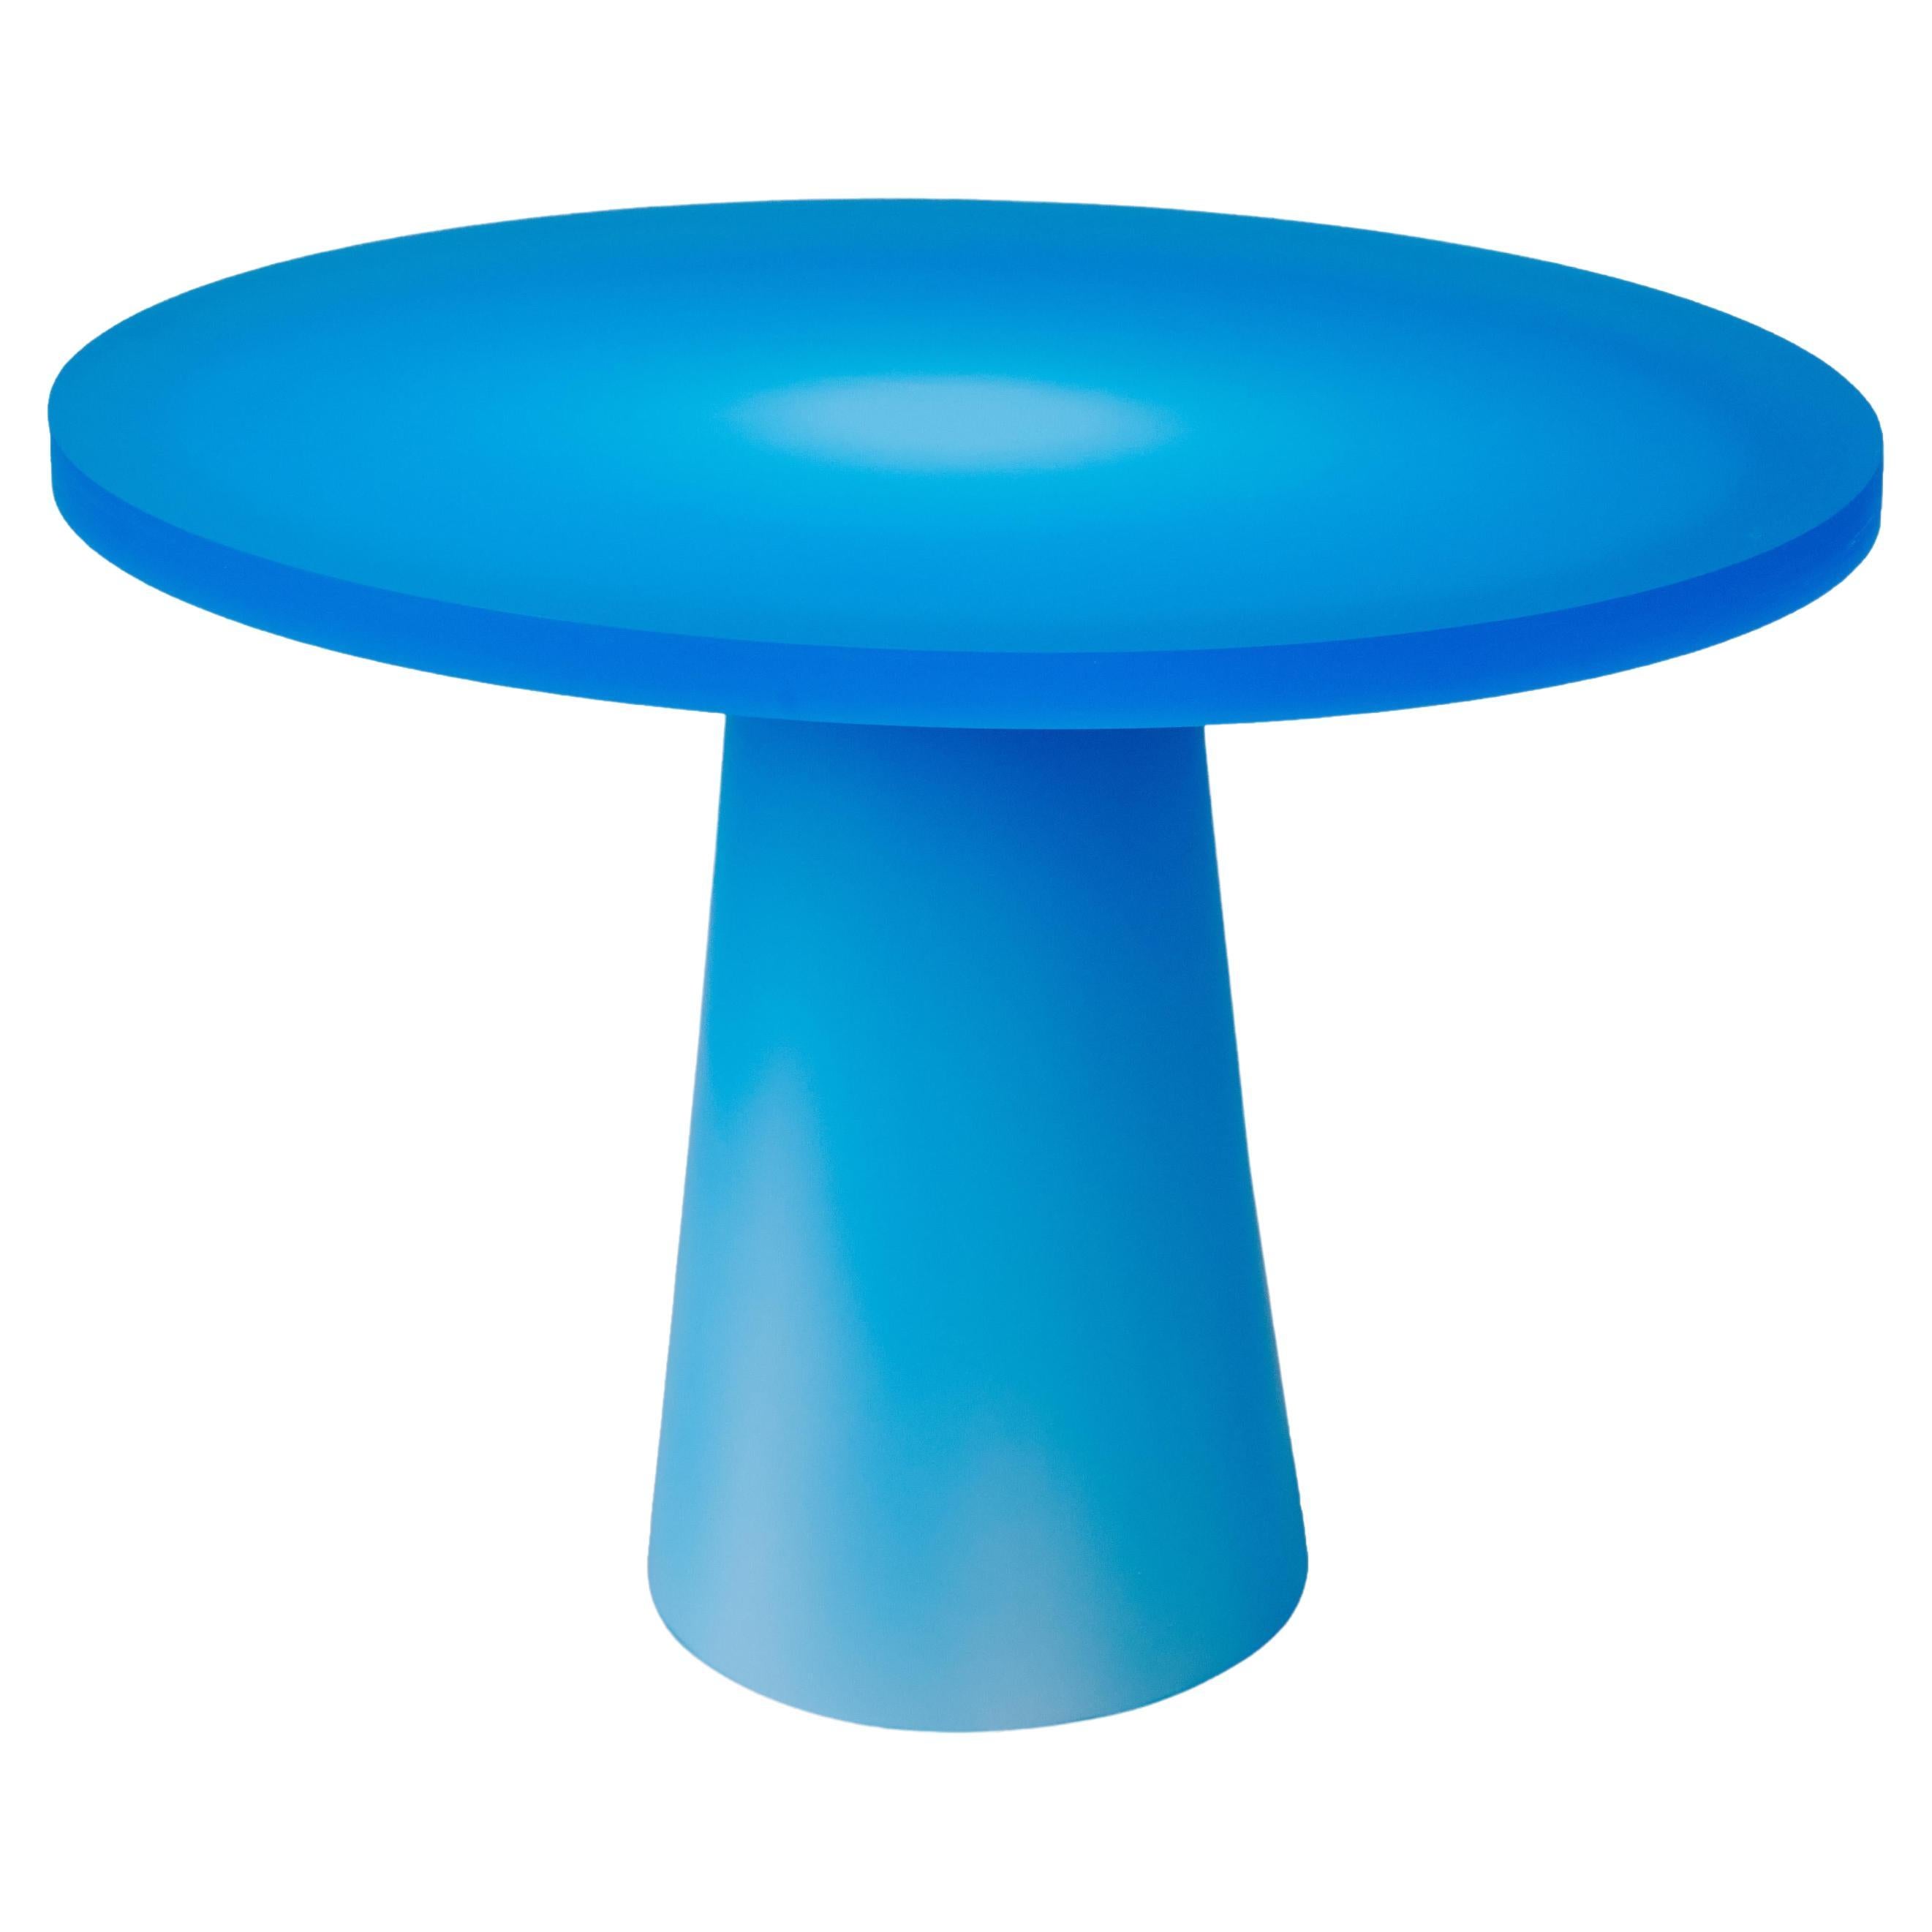 Table d'entrée elliptique en résine bleue de Facture Studio, REP par Tuleste Factory